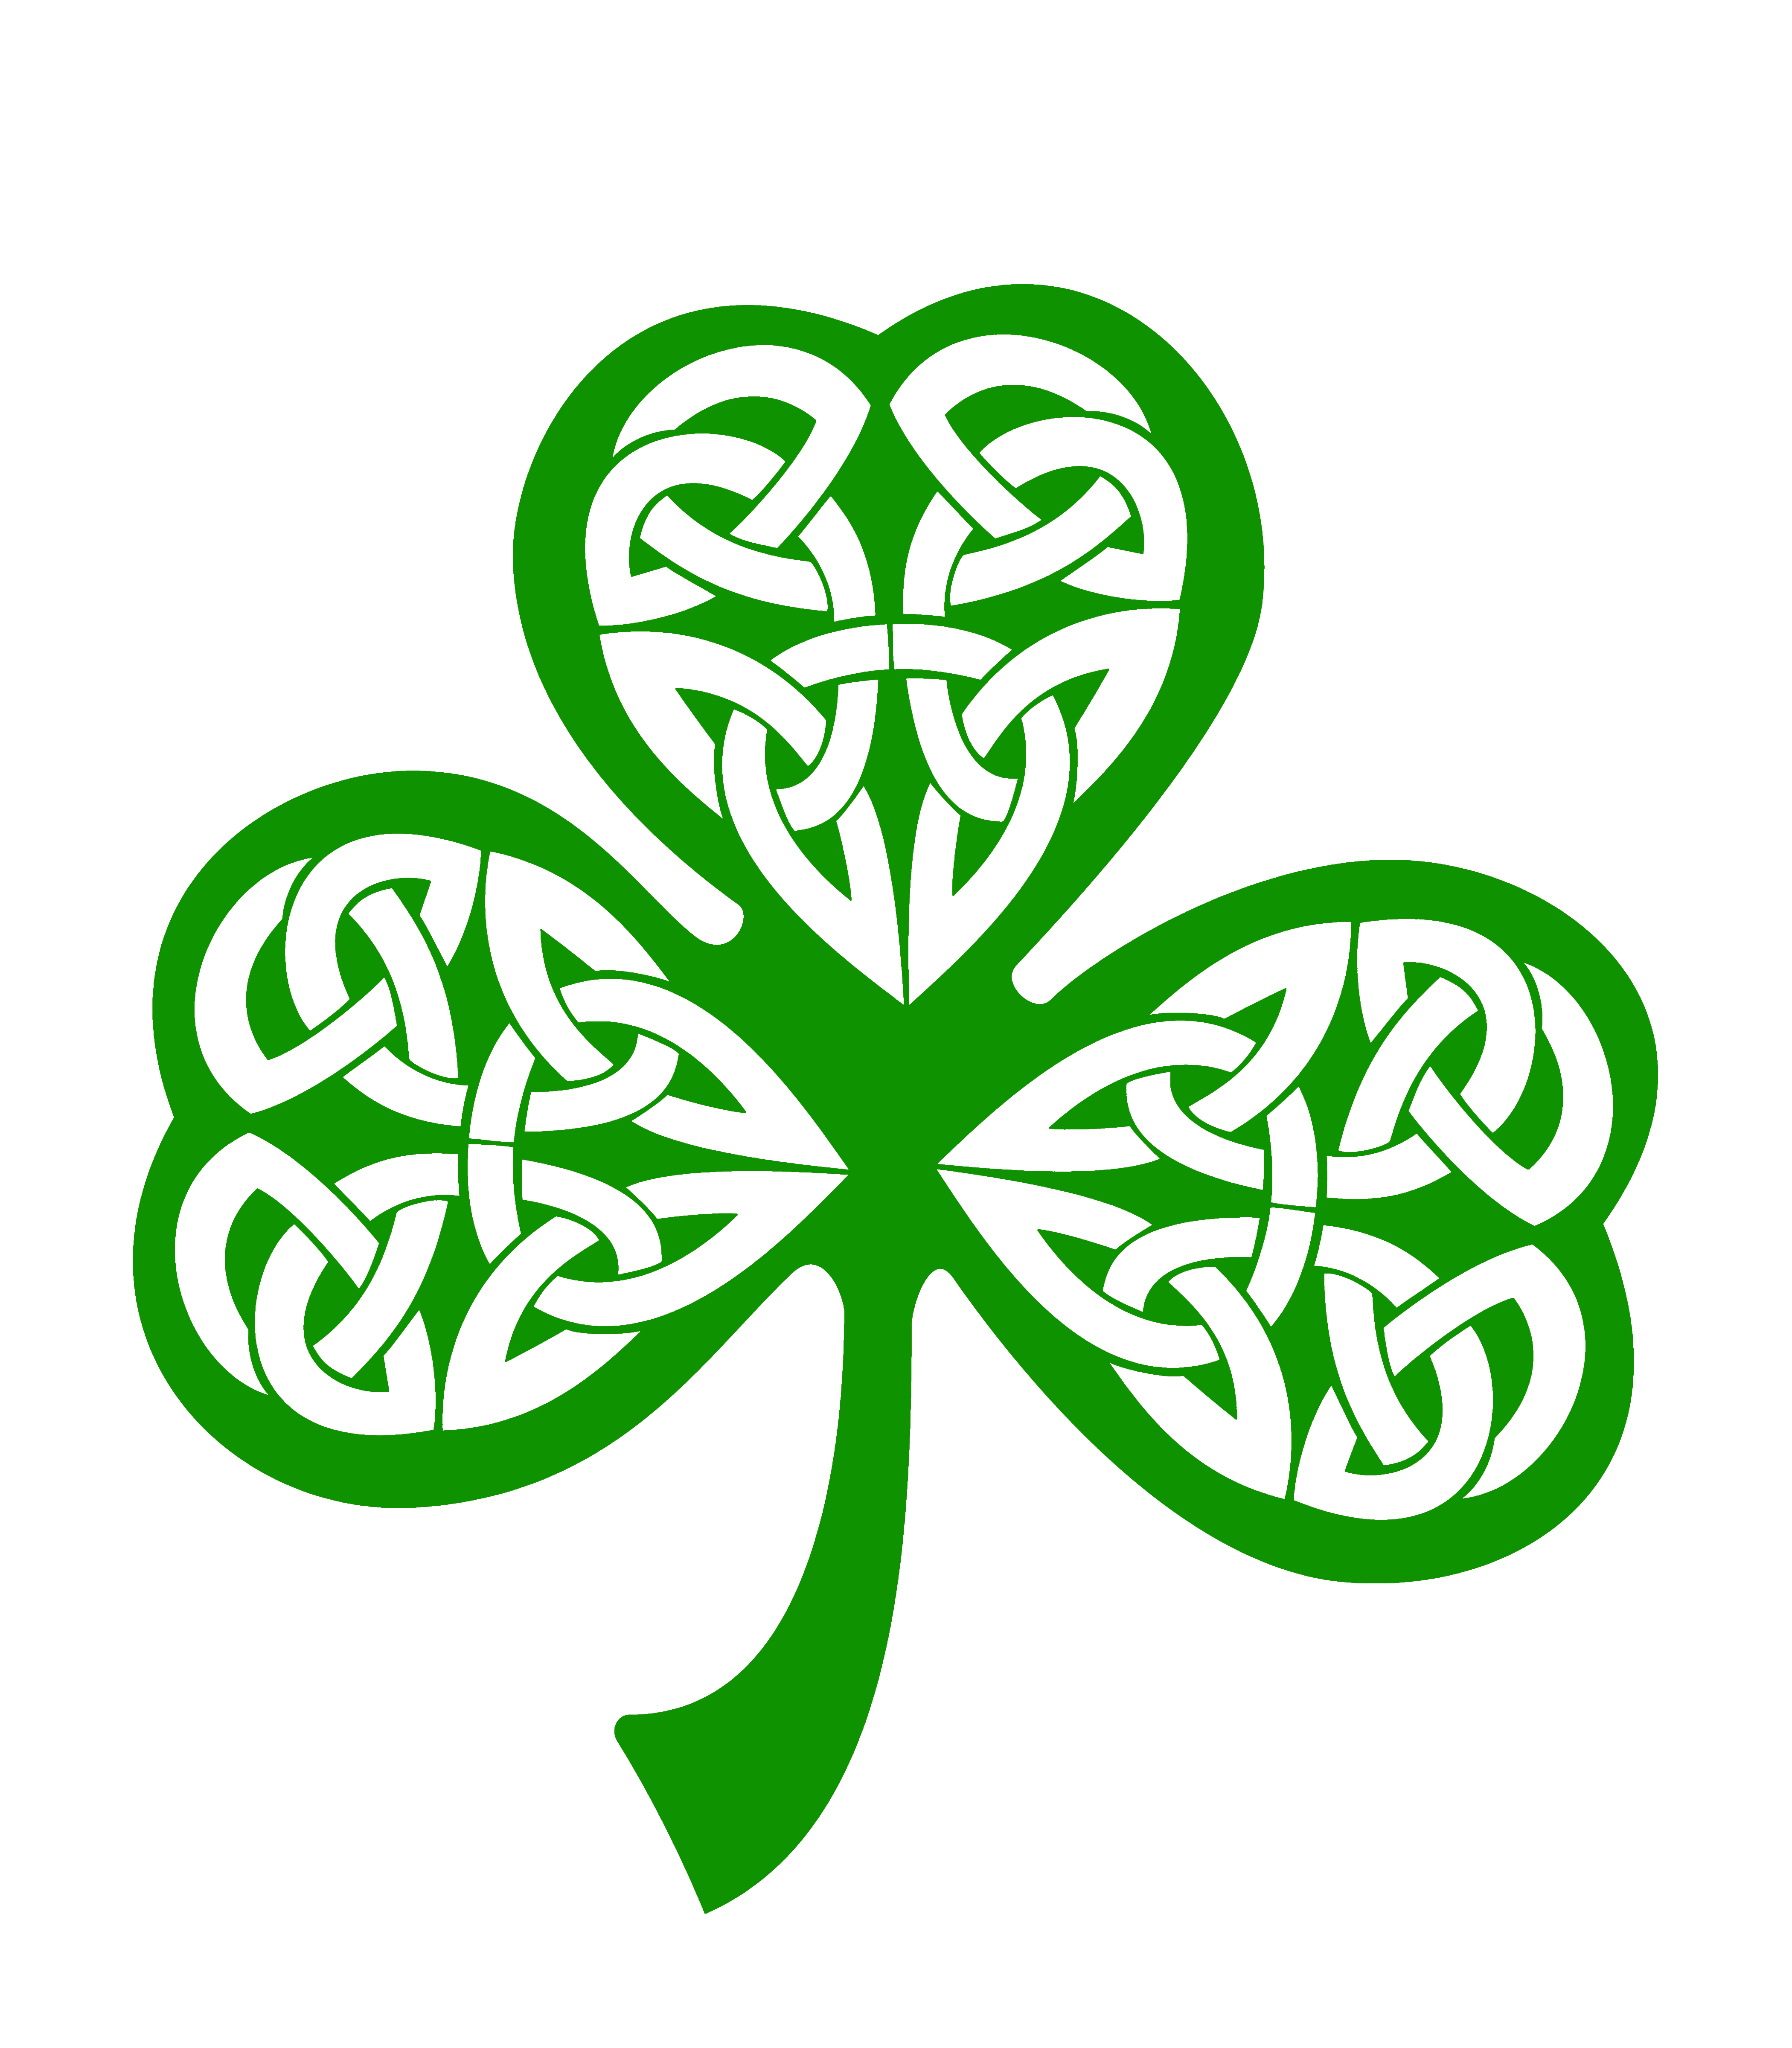 21-12 Irish Shamrock on Storenvy